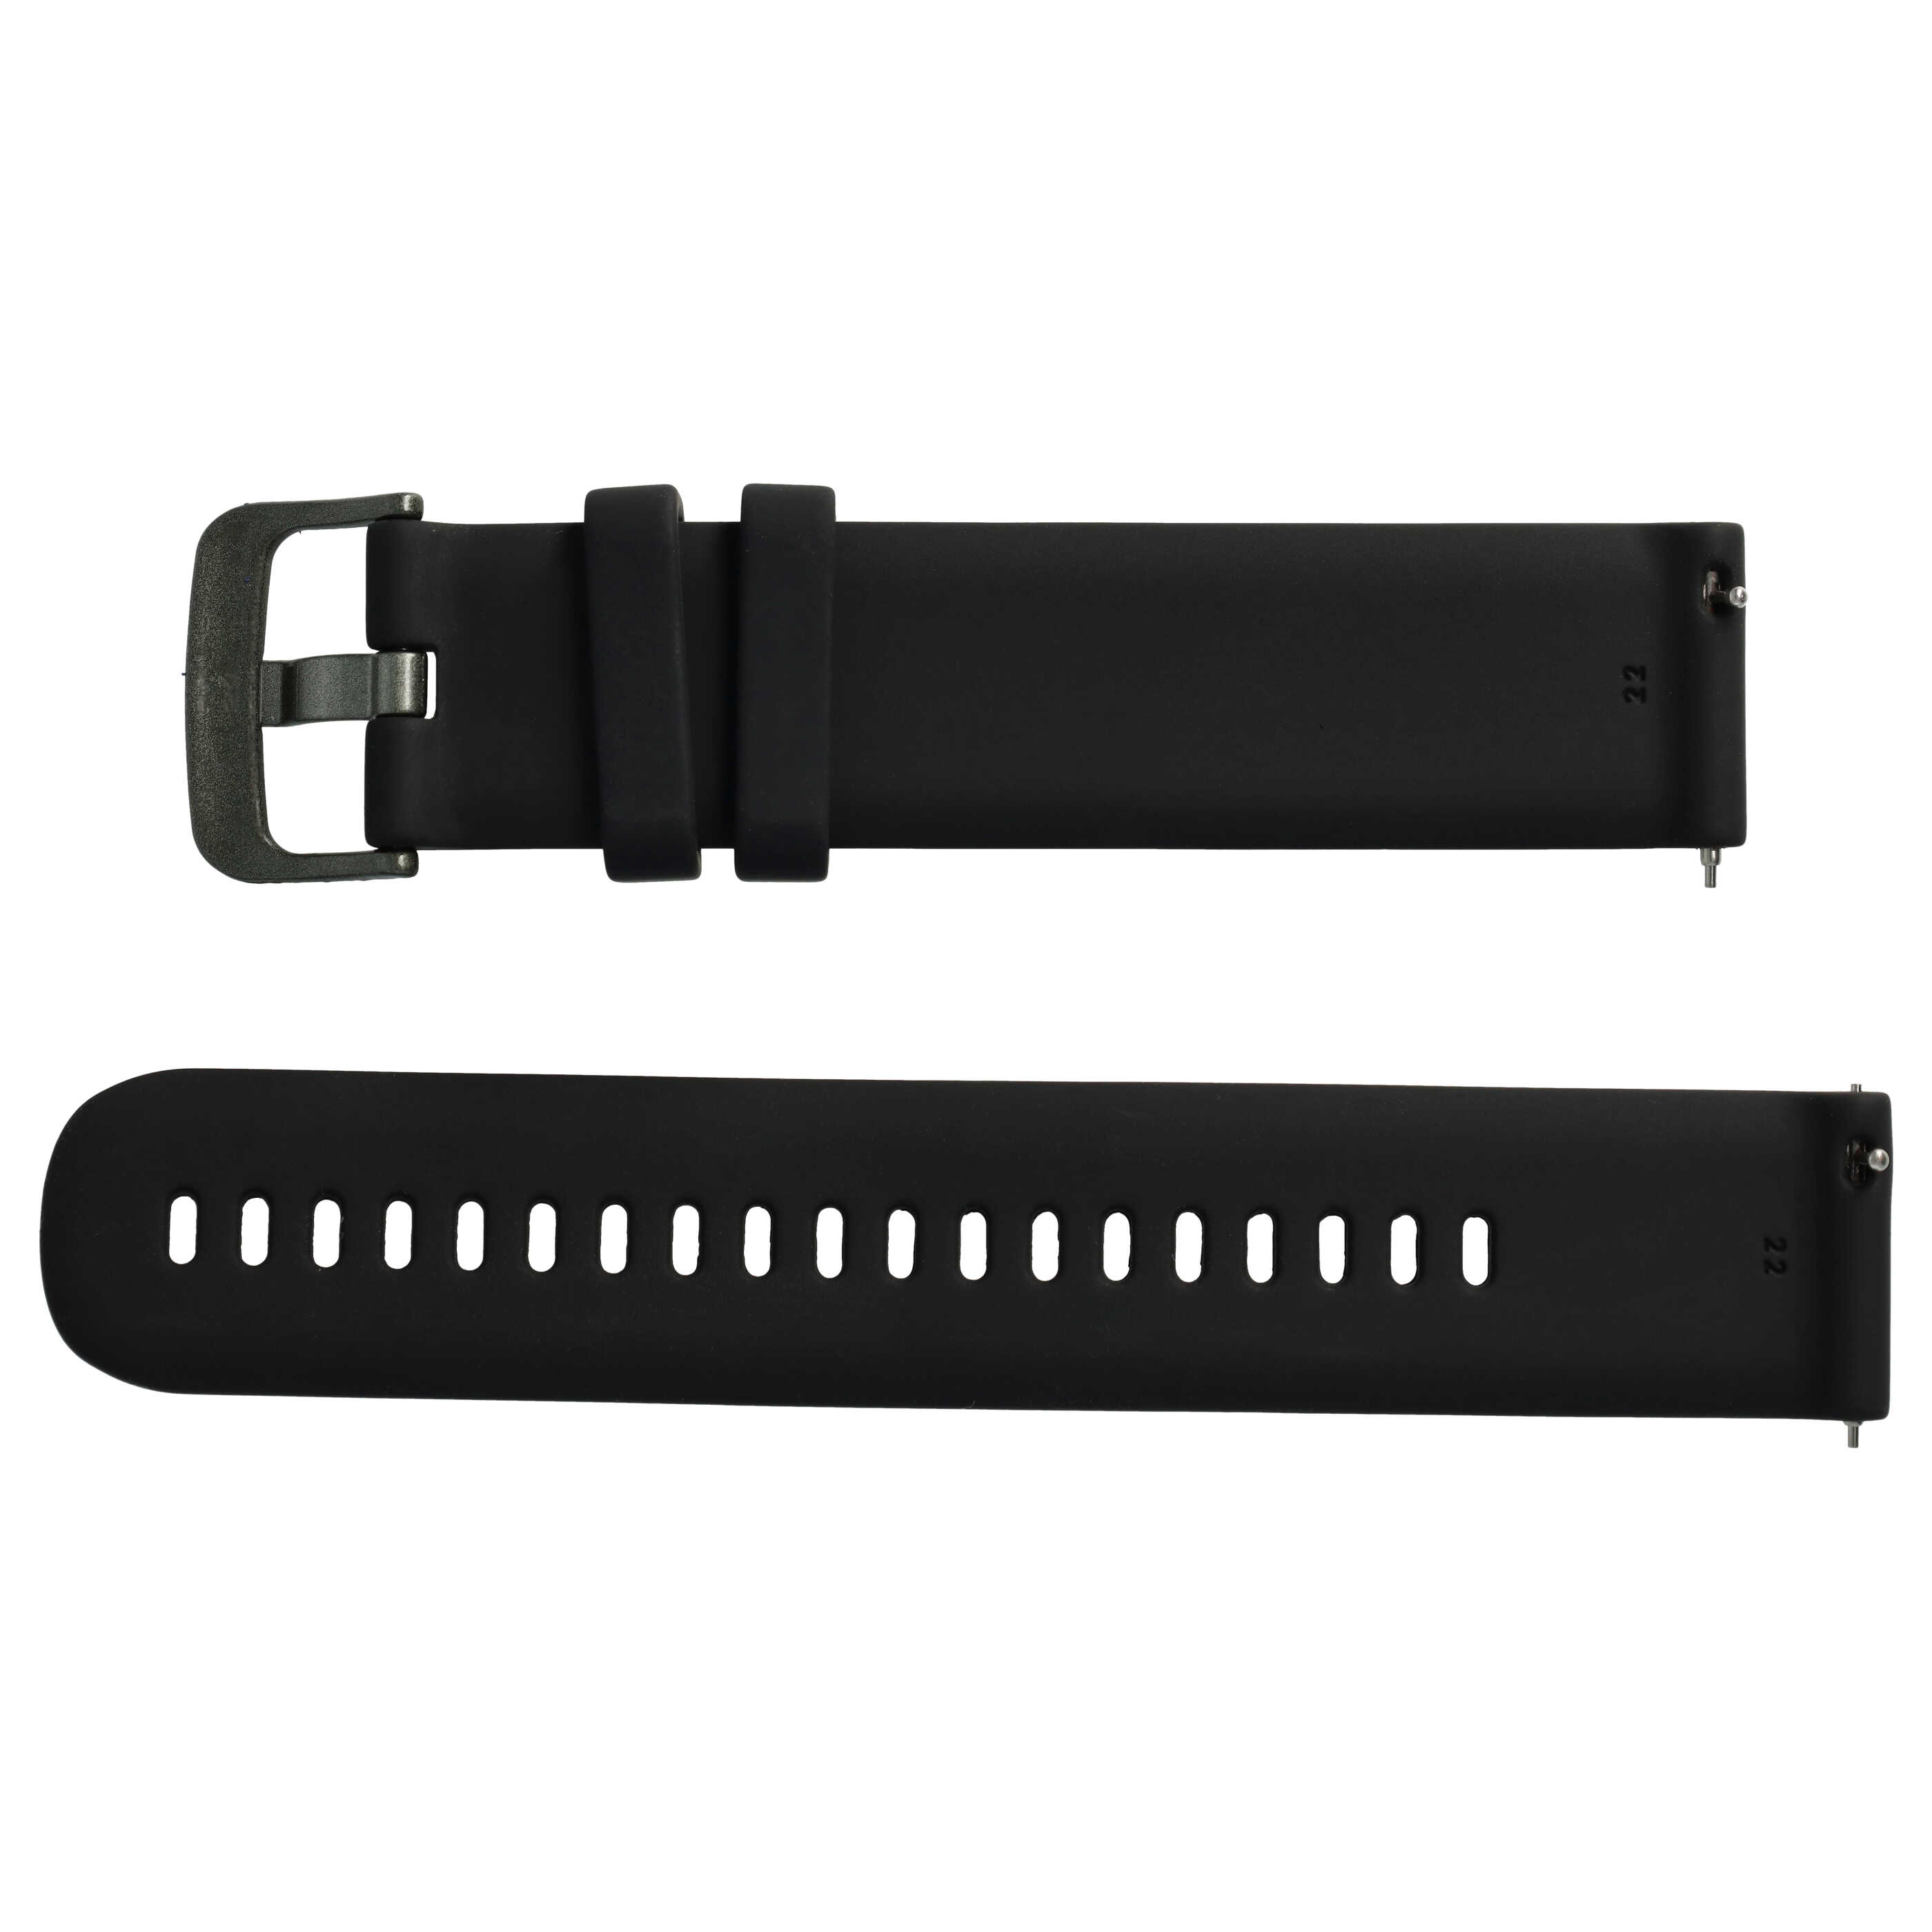 cinturino L per Samsung Galaxy Watch Smartwatch - fino a 270 mm circonferenza del polso, silicone, nero